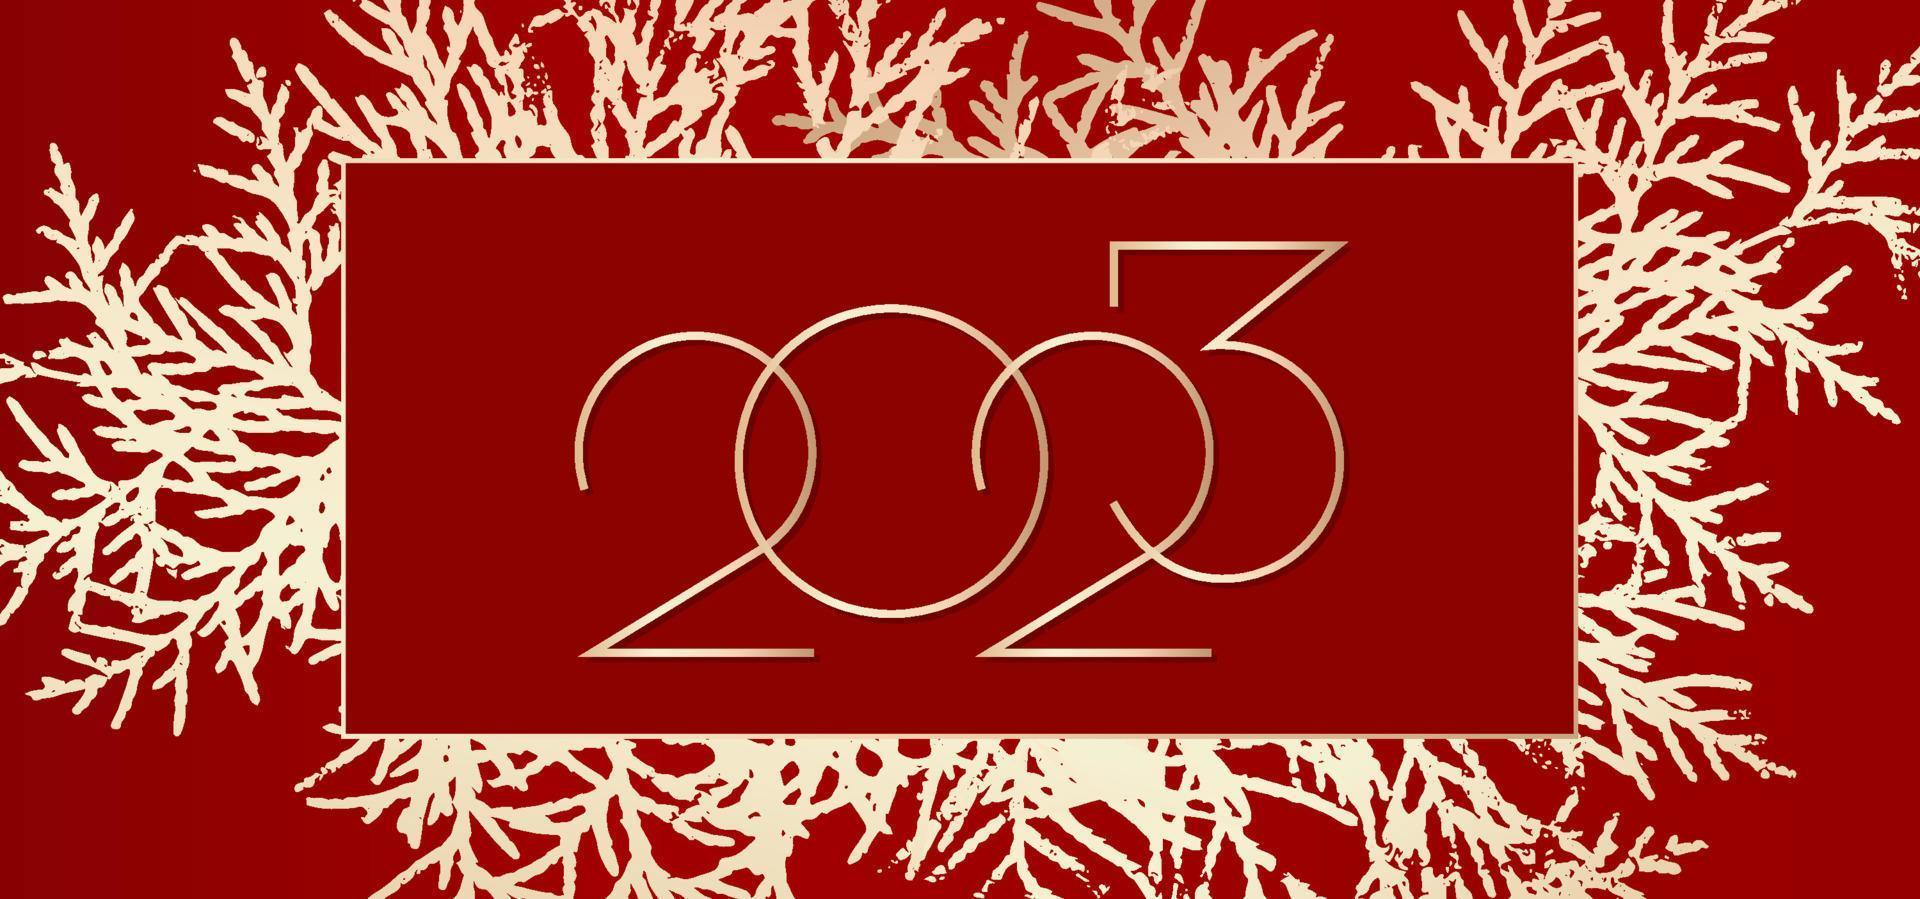 2023 feliz ano novo design de plano de fundo. fundo vermelho com árvore de Natal de ouro. cartão de felicitações, banner, cartaz. ilustração vetorial. vetor